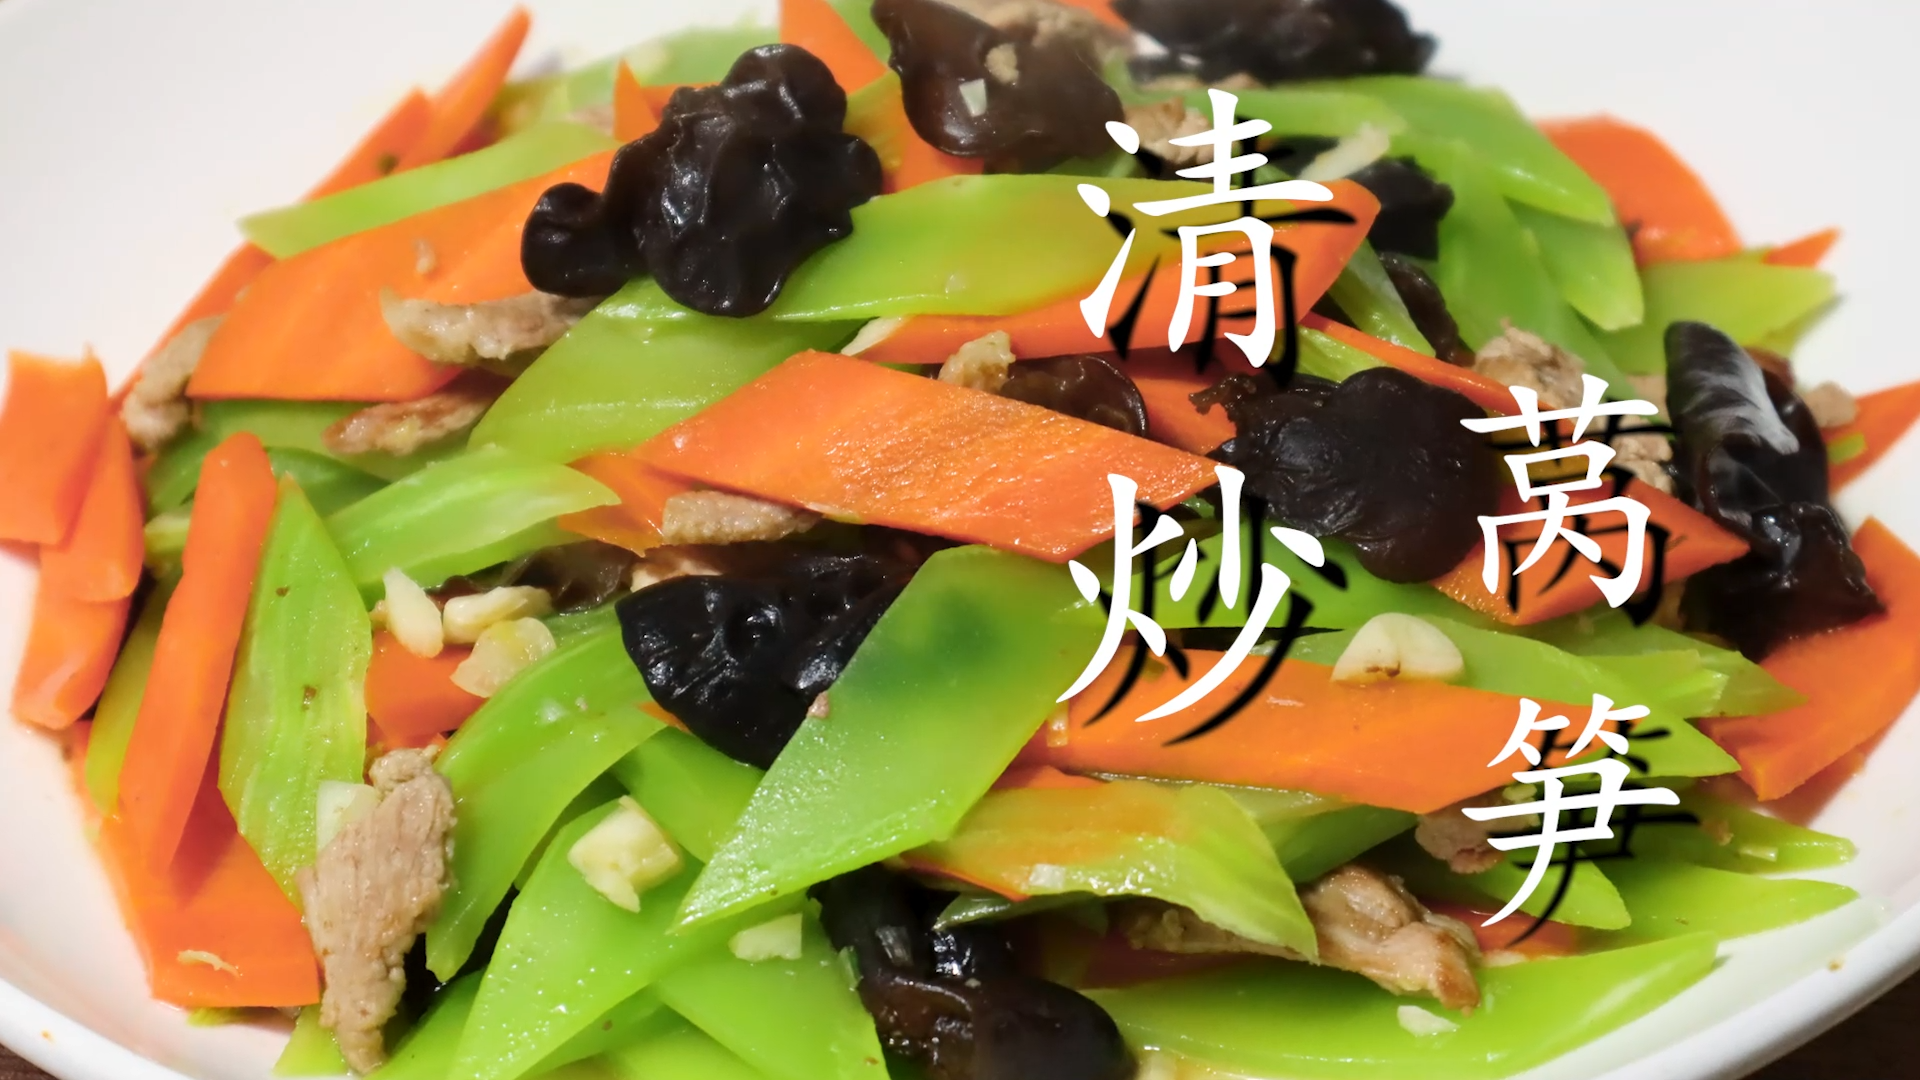 莴苣炒韭菜,莴苣炒韭菜的家常做法 - 美食杰莴苣炒韭菜做法大全